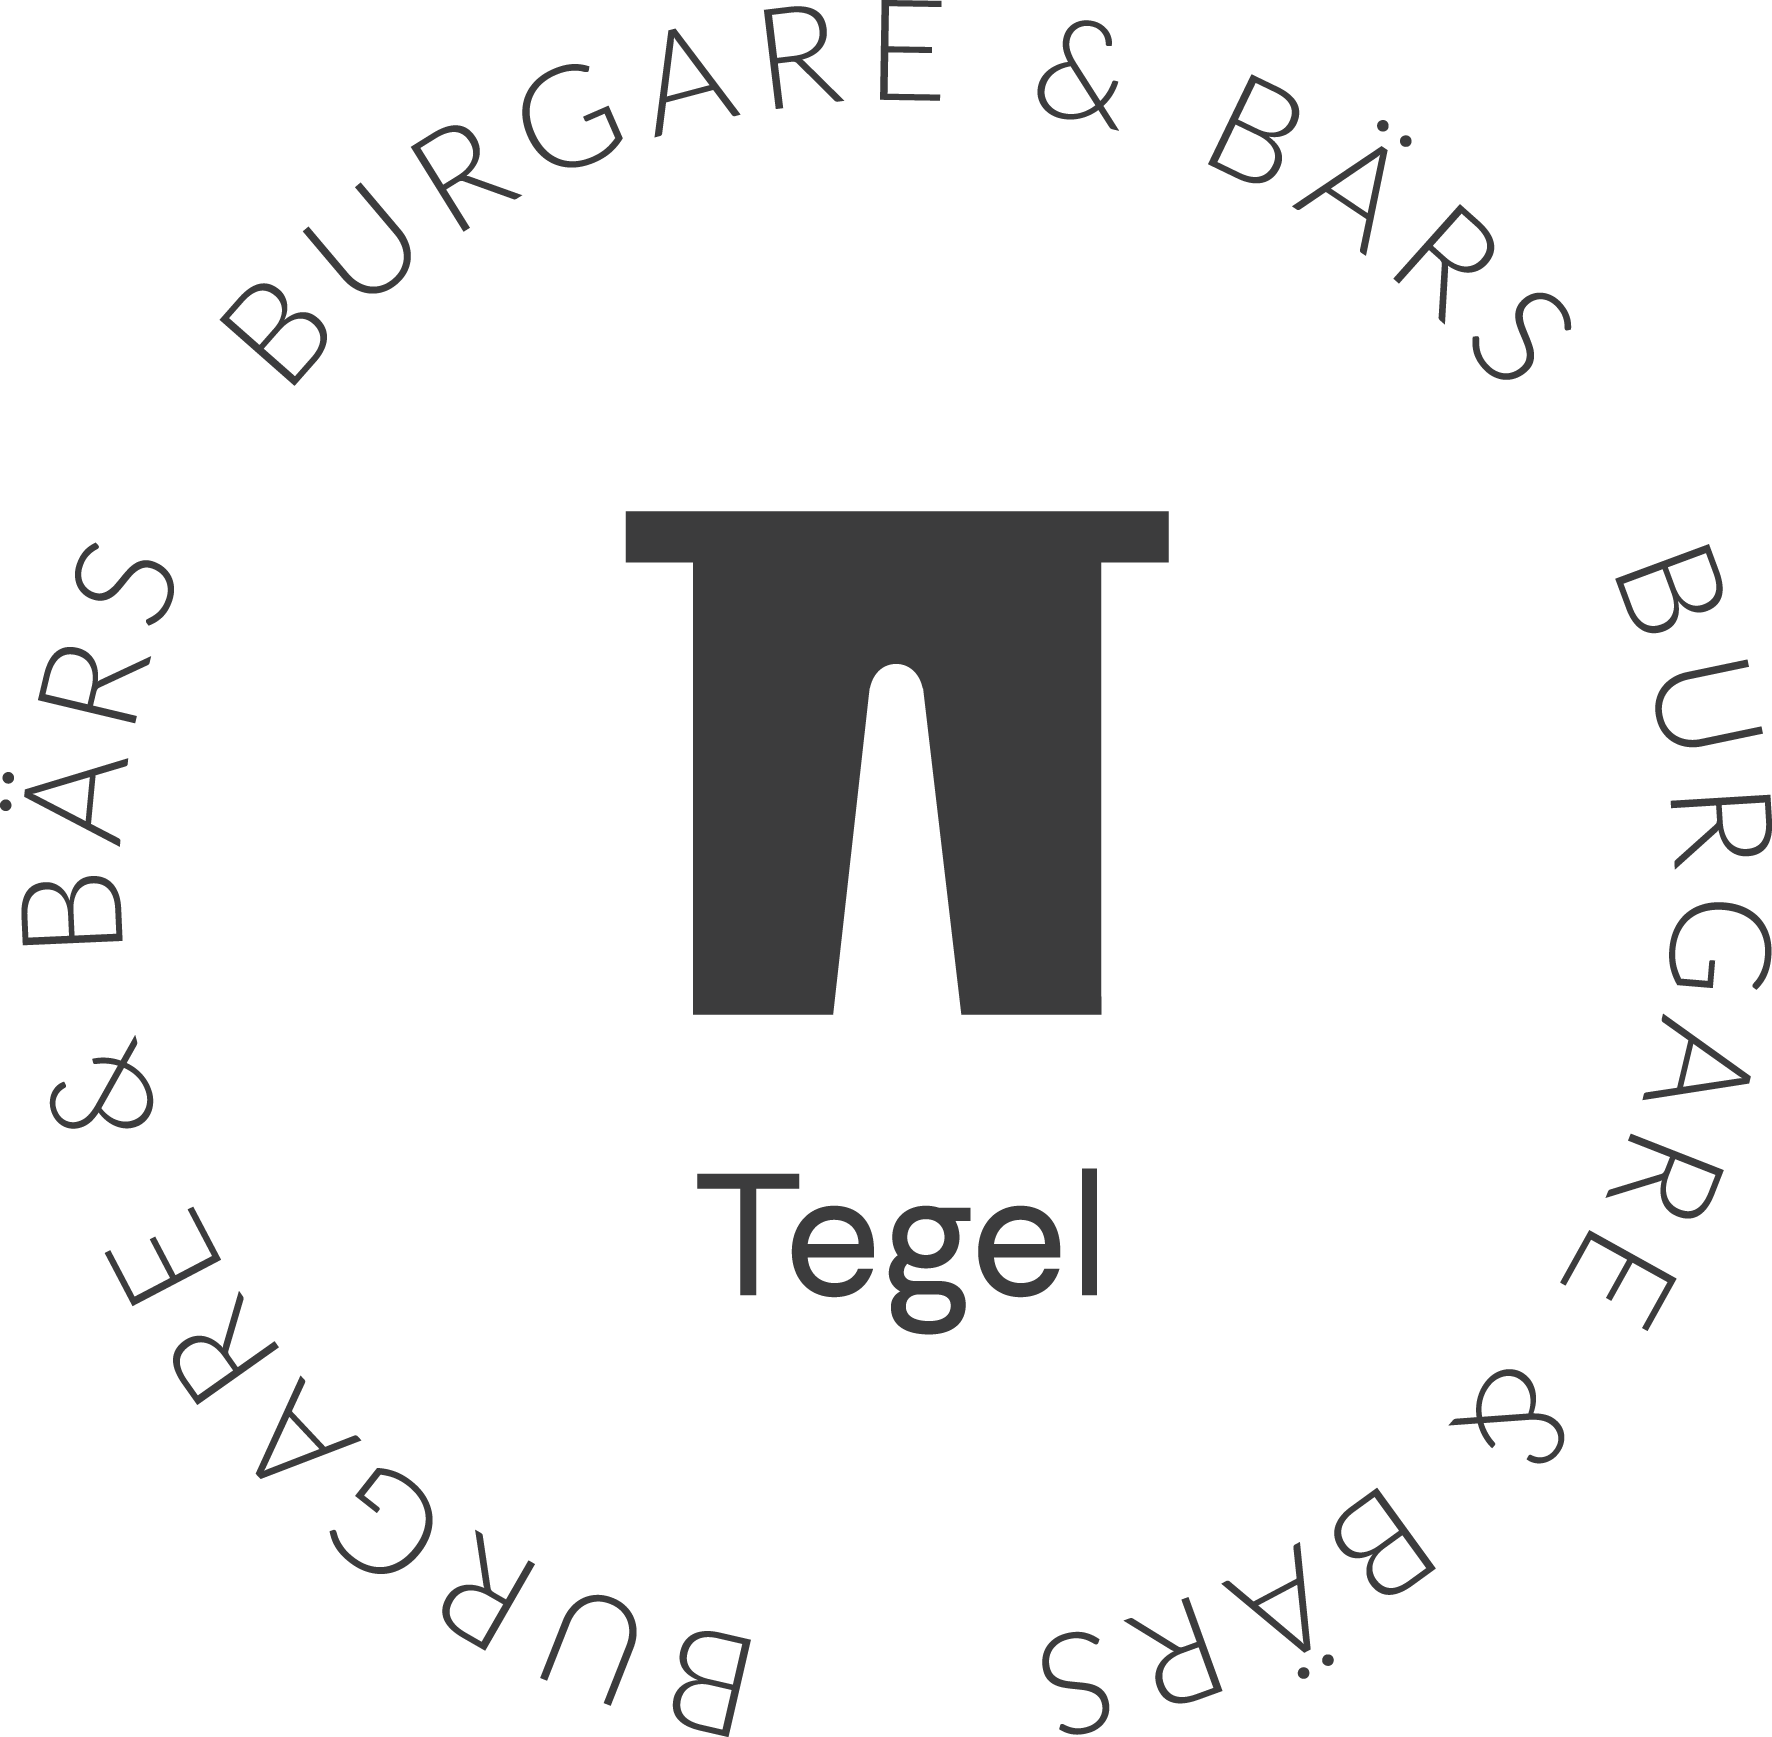 Tegel Burgare & Bärs logotype